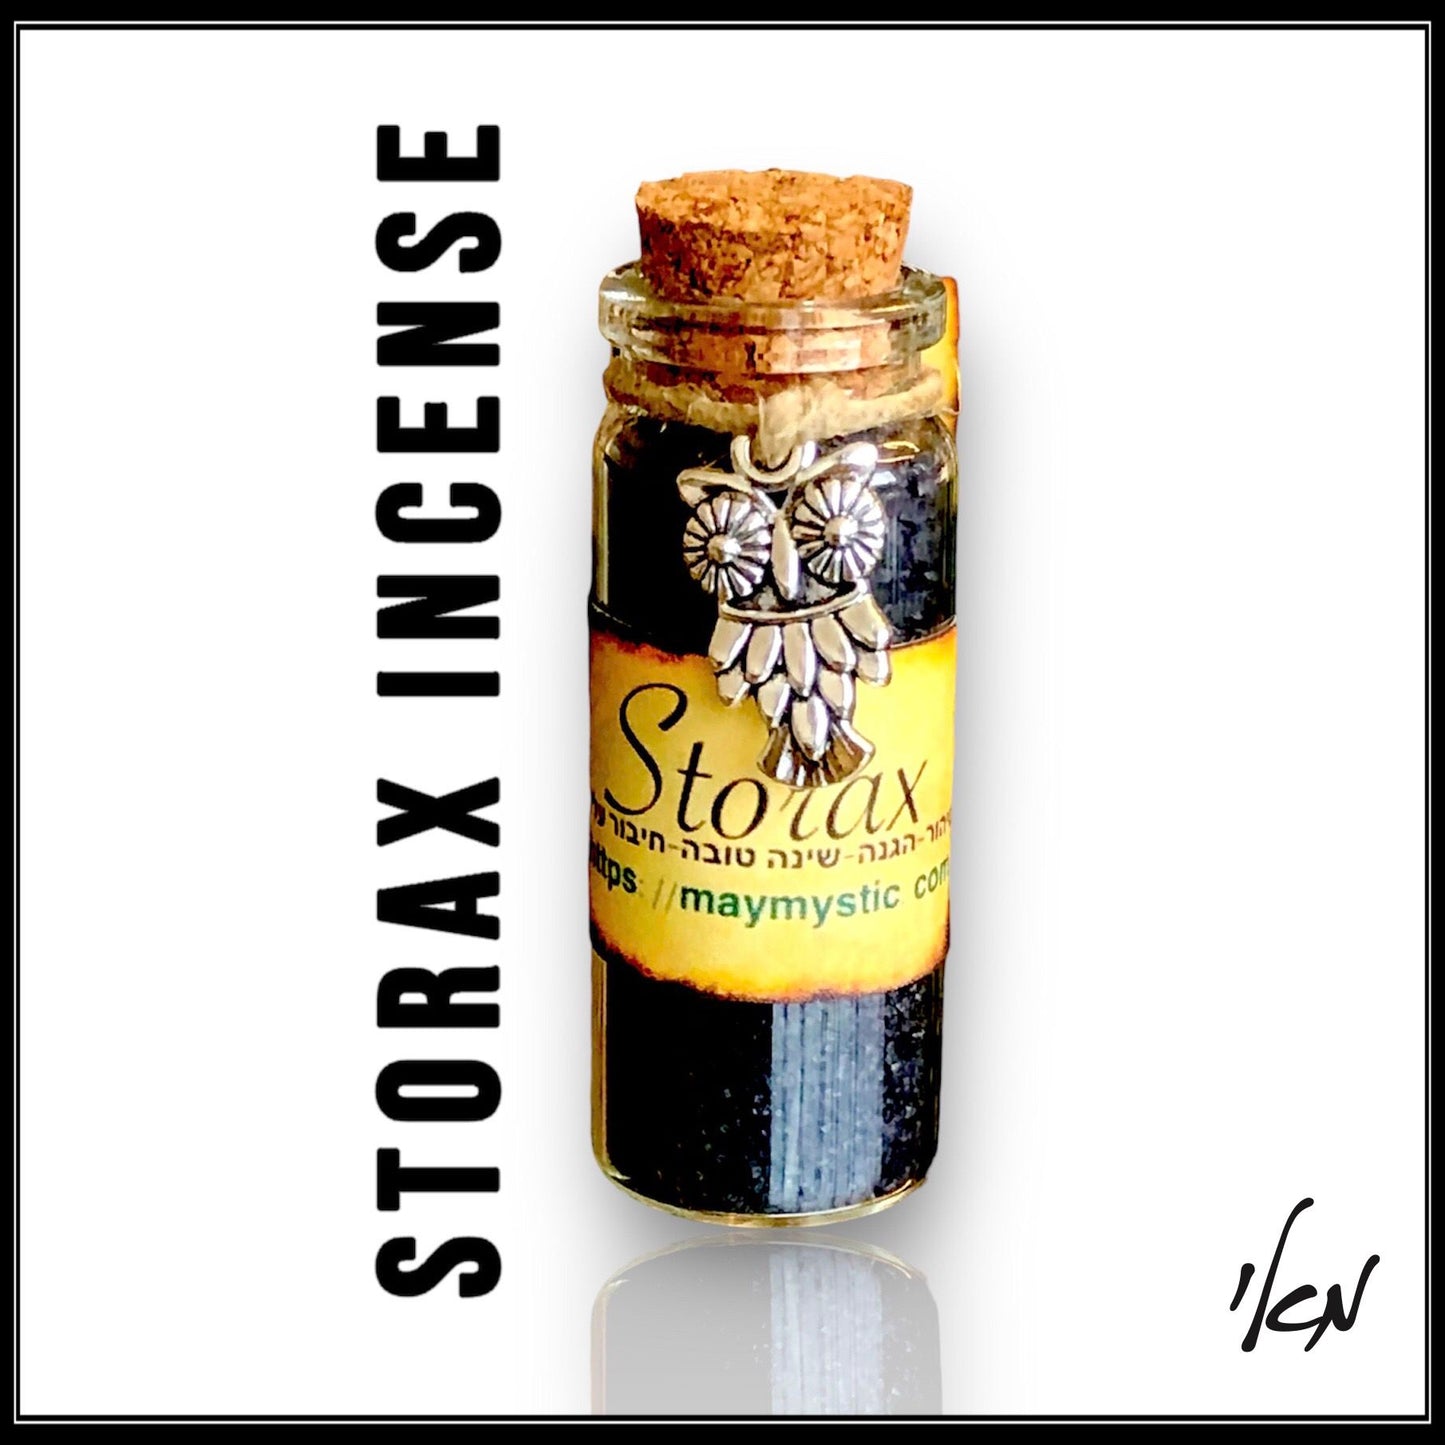 קטורת סטורקס-סטירקס -styrax/storax incense